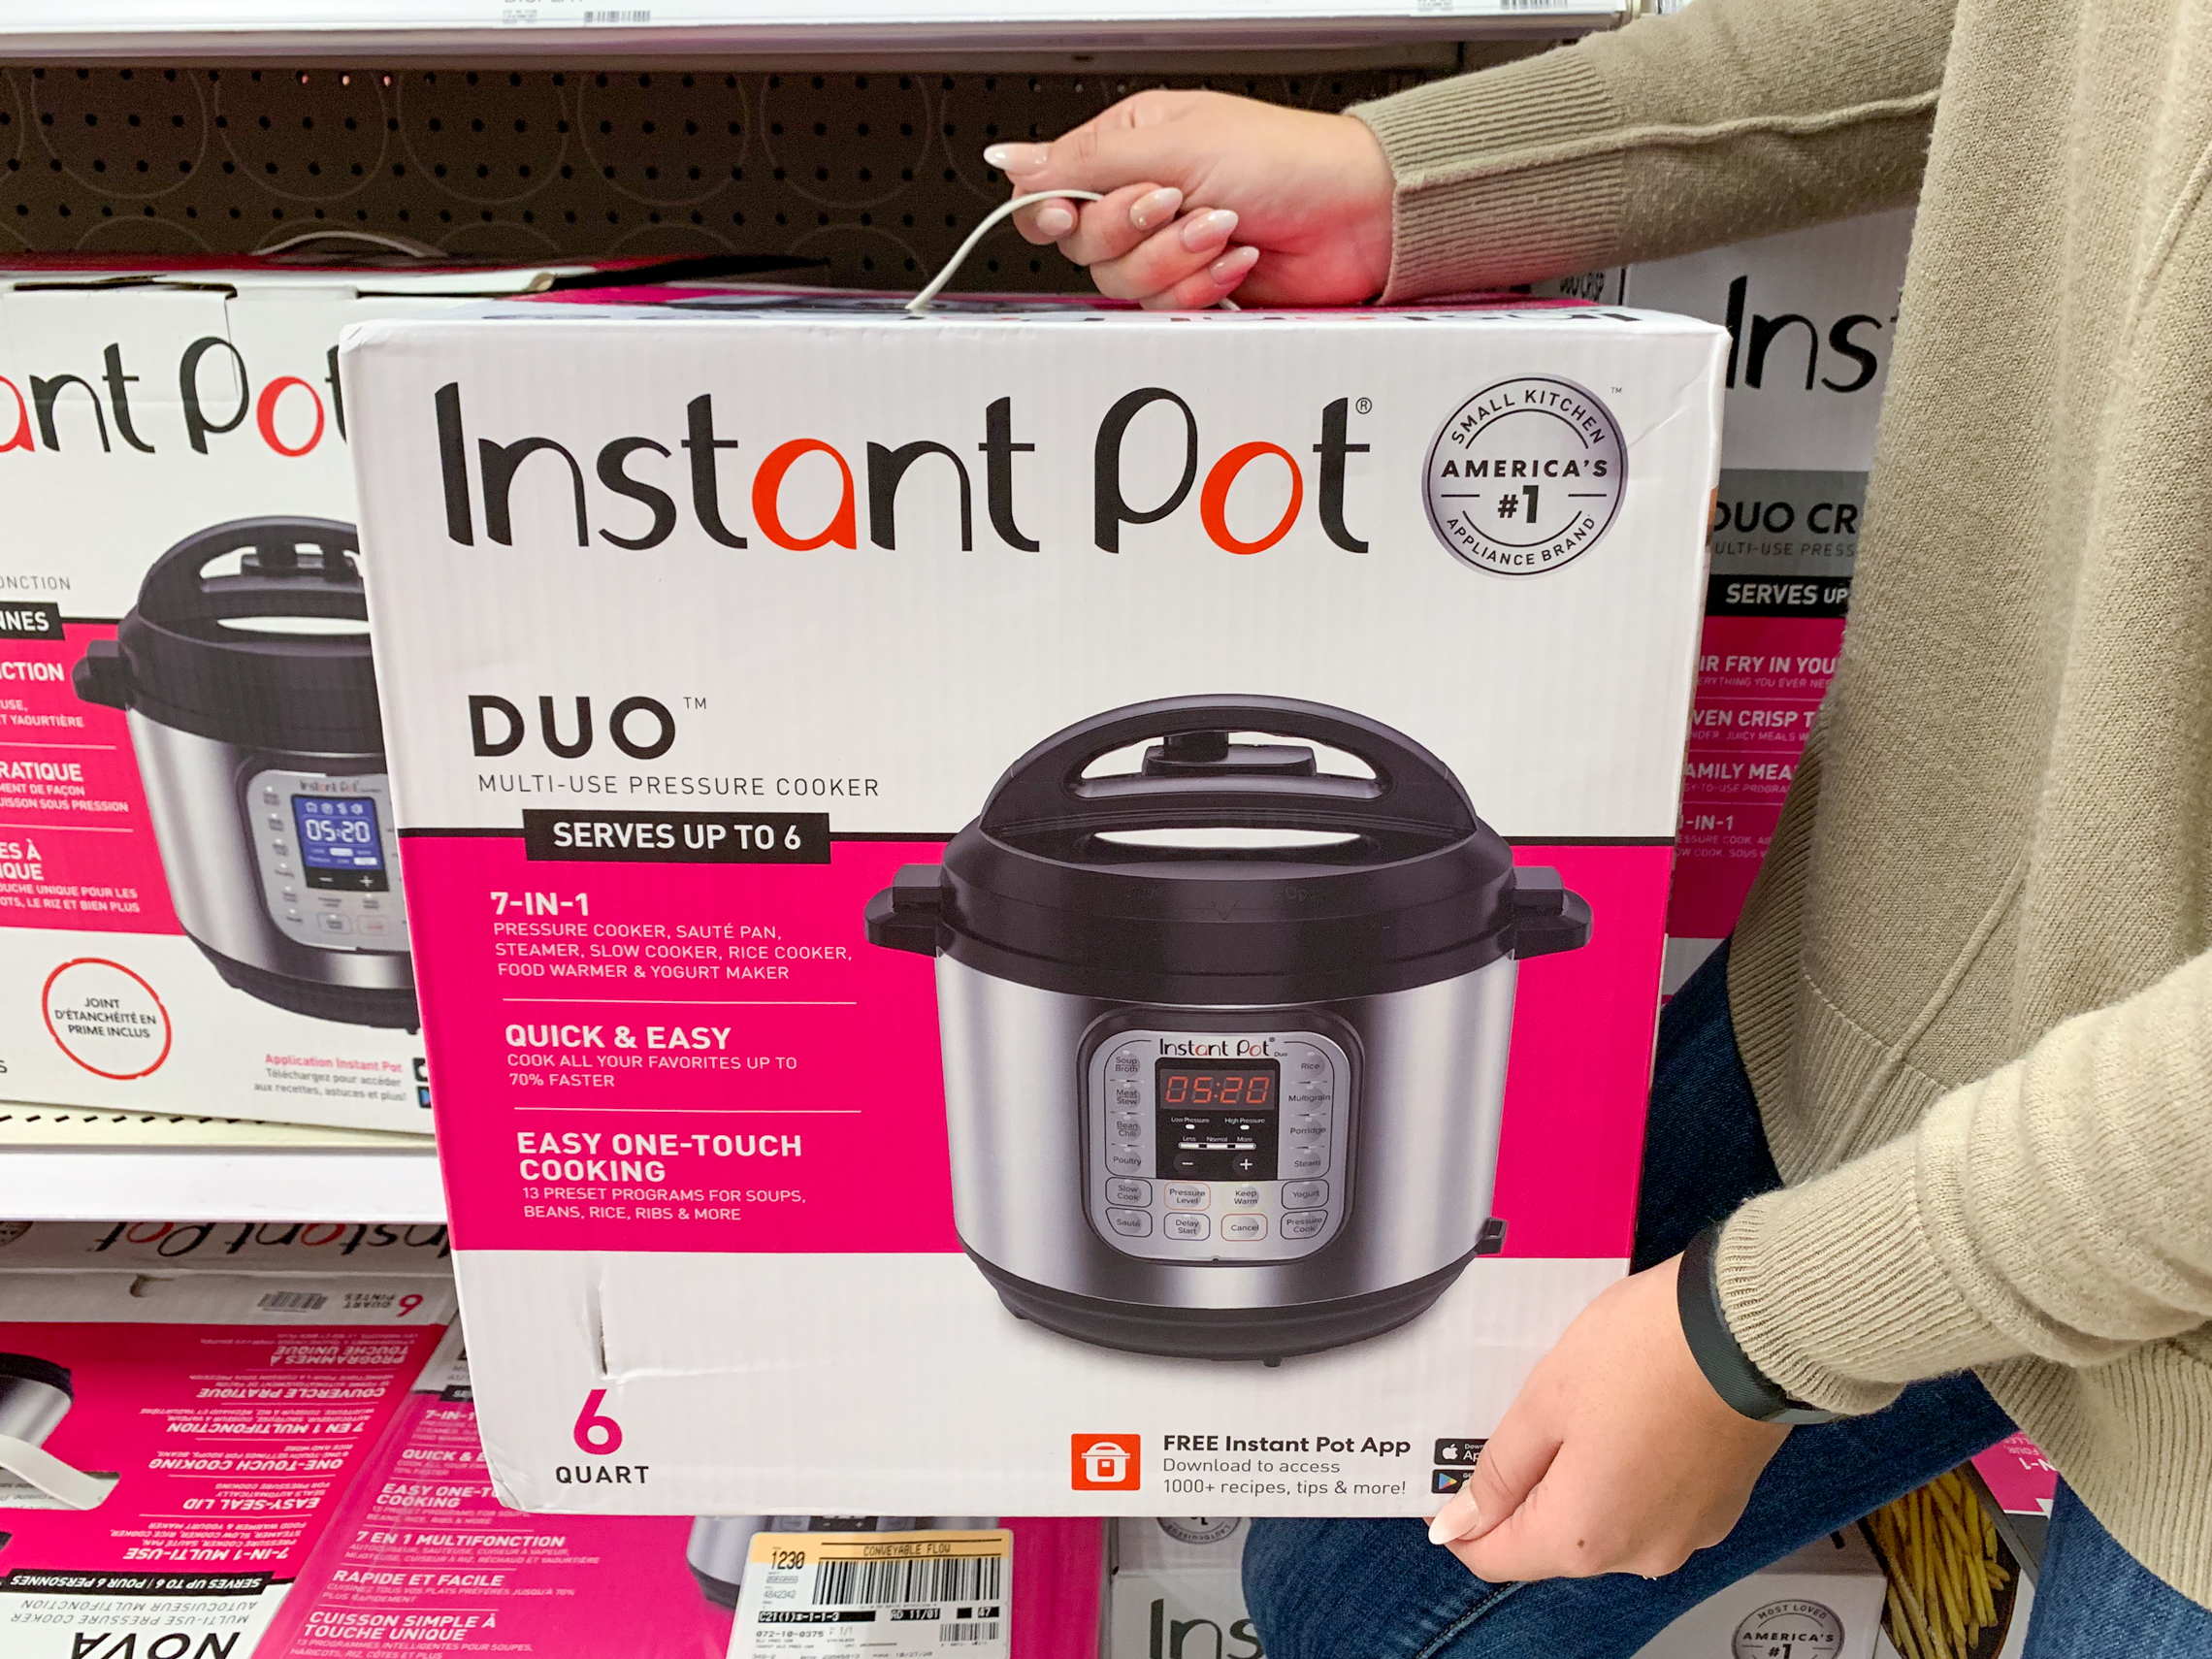 Best Instant Pot deal: Instant Pot Duo Plus 9-in-1 now $79.95